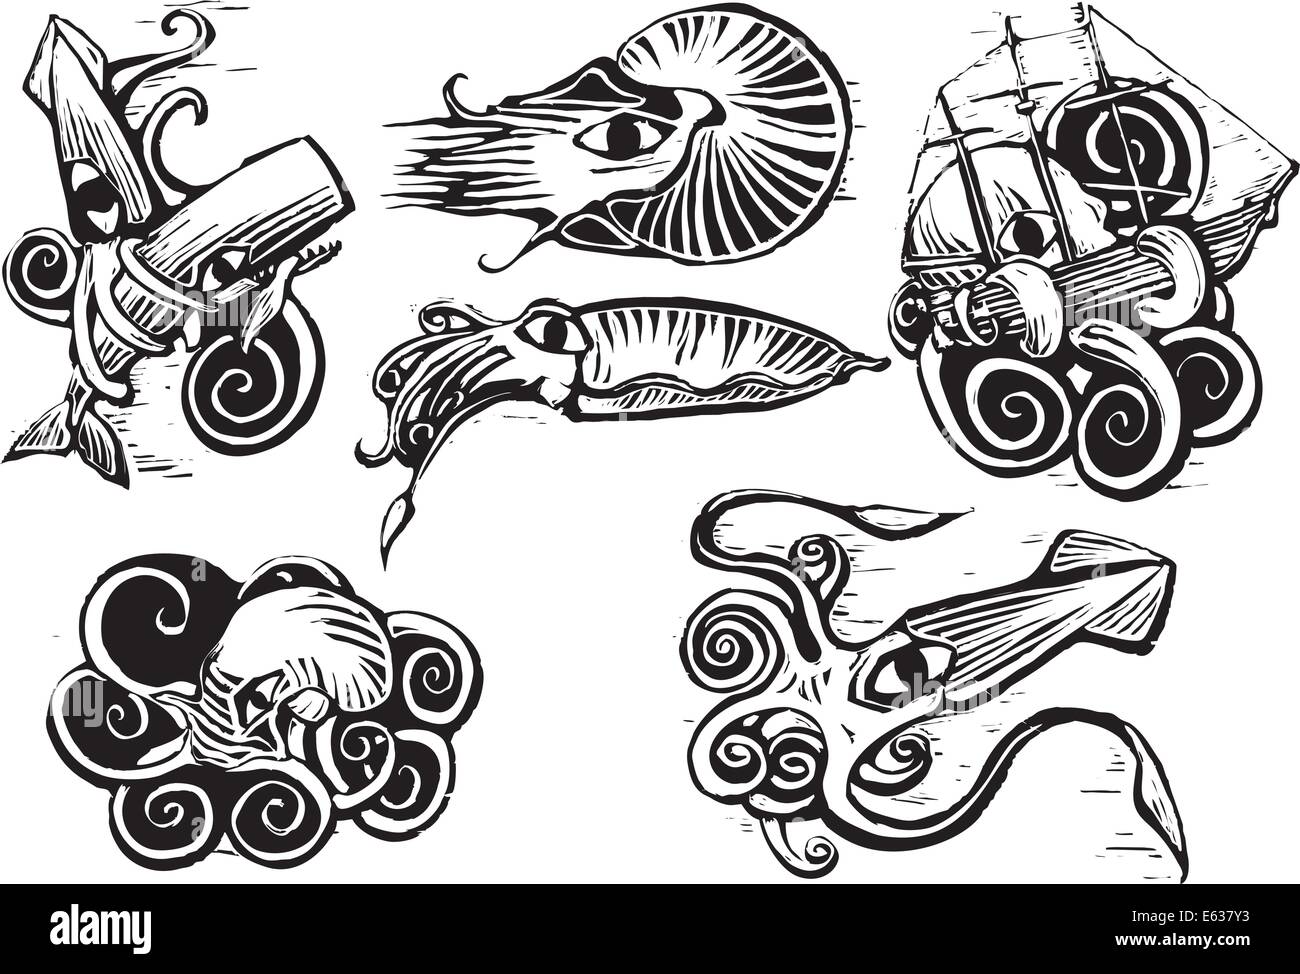 Grupo de animales acuáticos con calamares, nautilus, sepias y pulpos en xilografía retro imagen. Ilustración del Vector